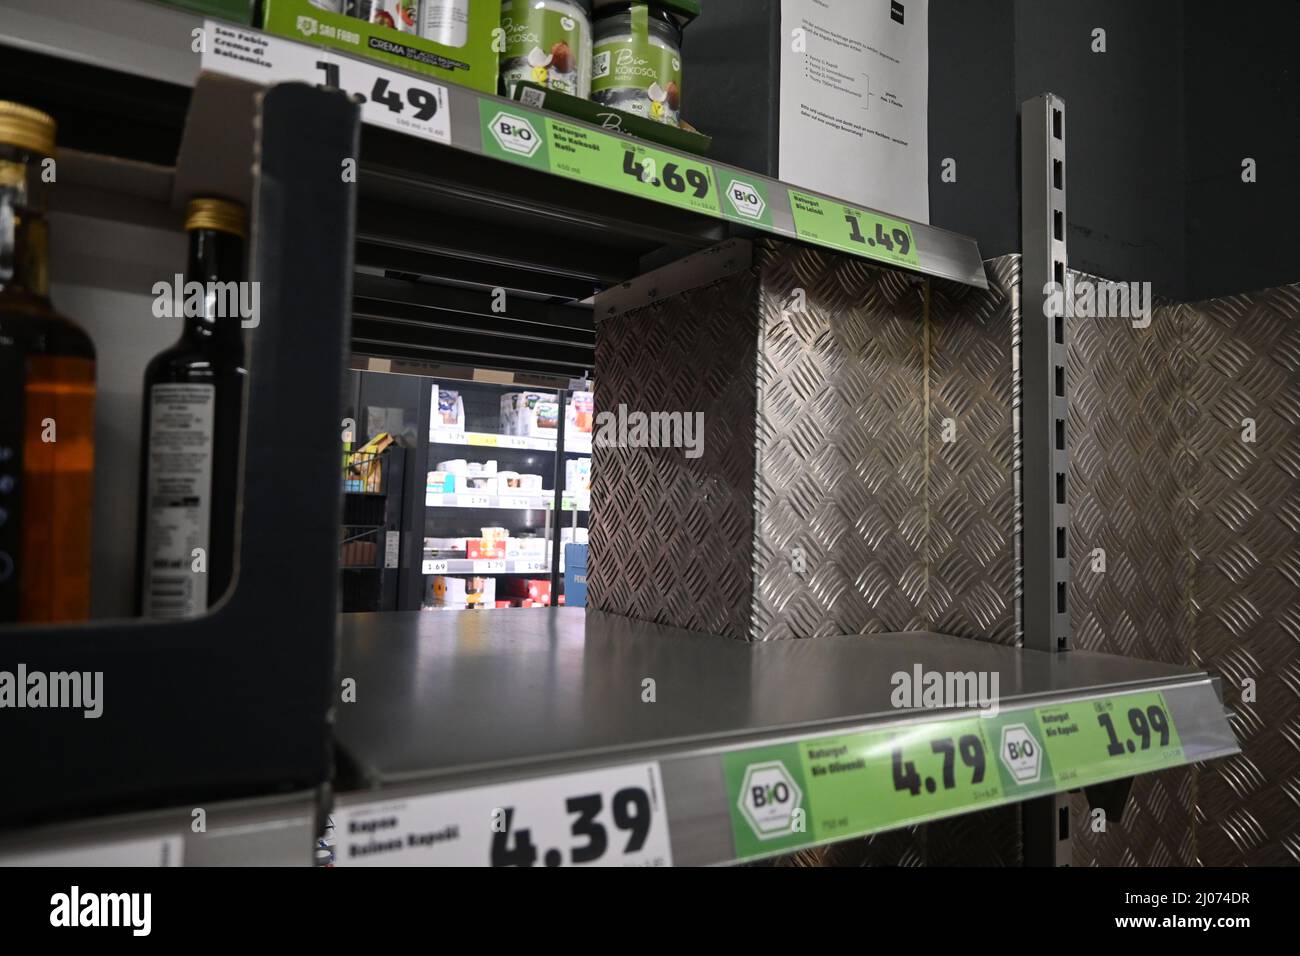 Hamburg der 15.03.2022 - aufgrund sogenannter Hamsterkäufe sind Speiseöl, Mehl, Zucker und Nudeln bei vielen Supermärkten und Discountern vergriffen. Foto de stock